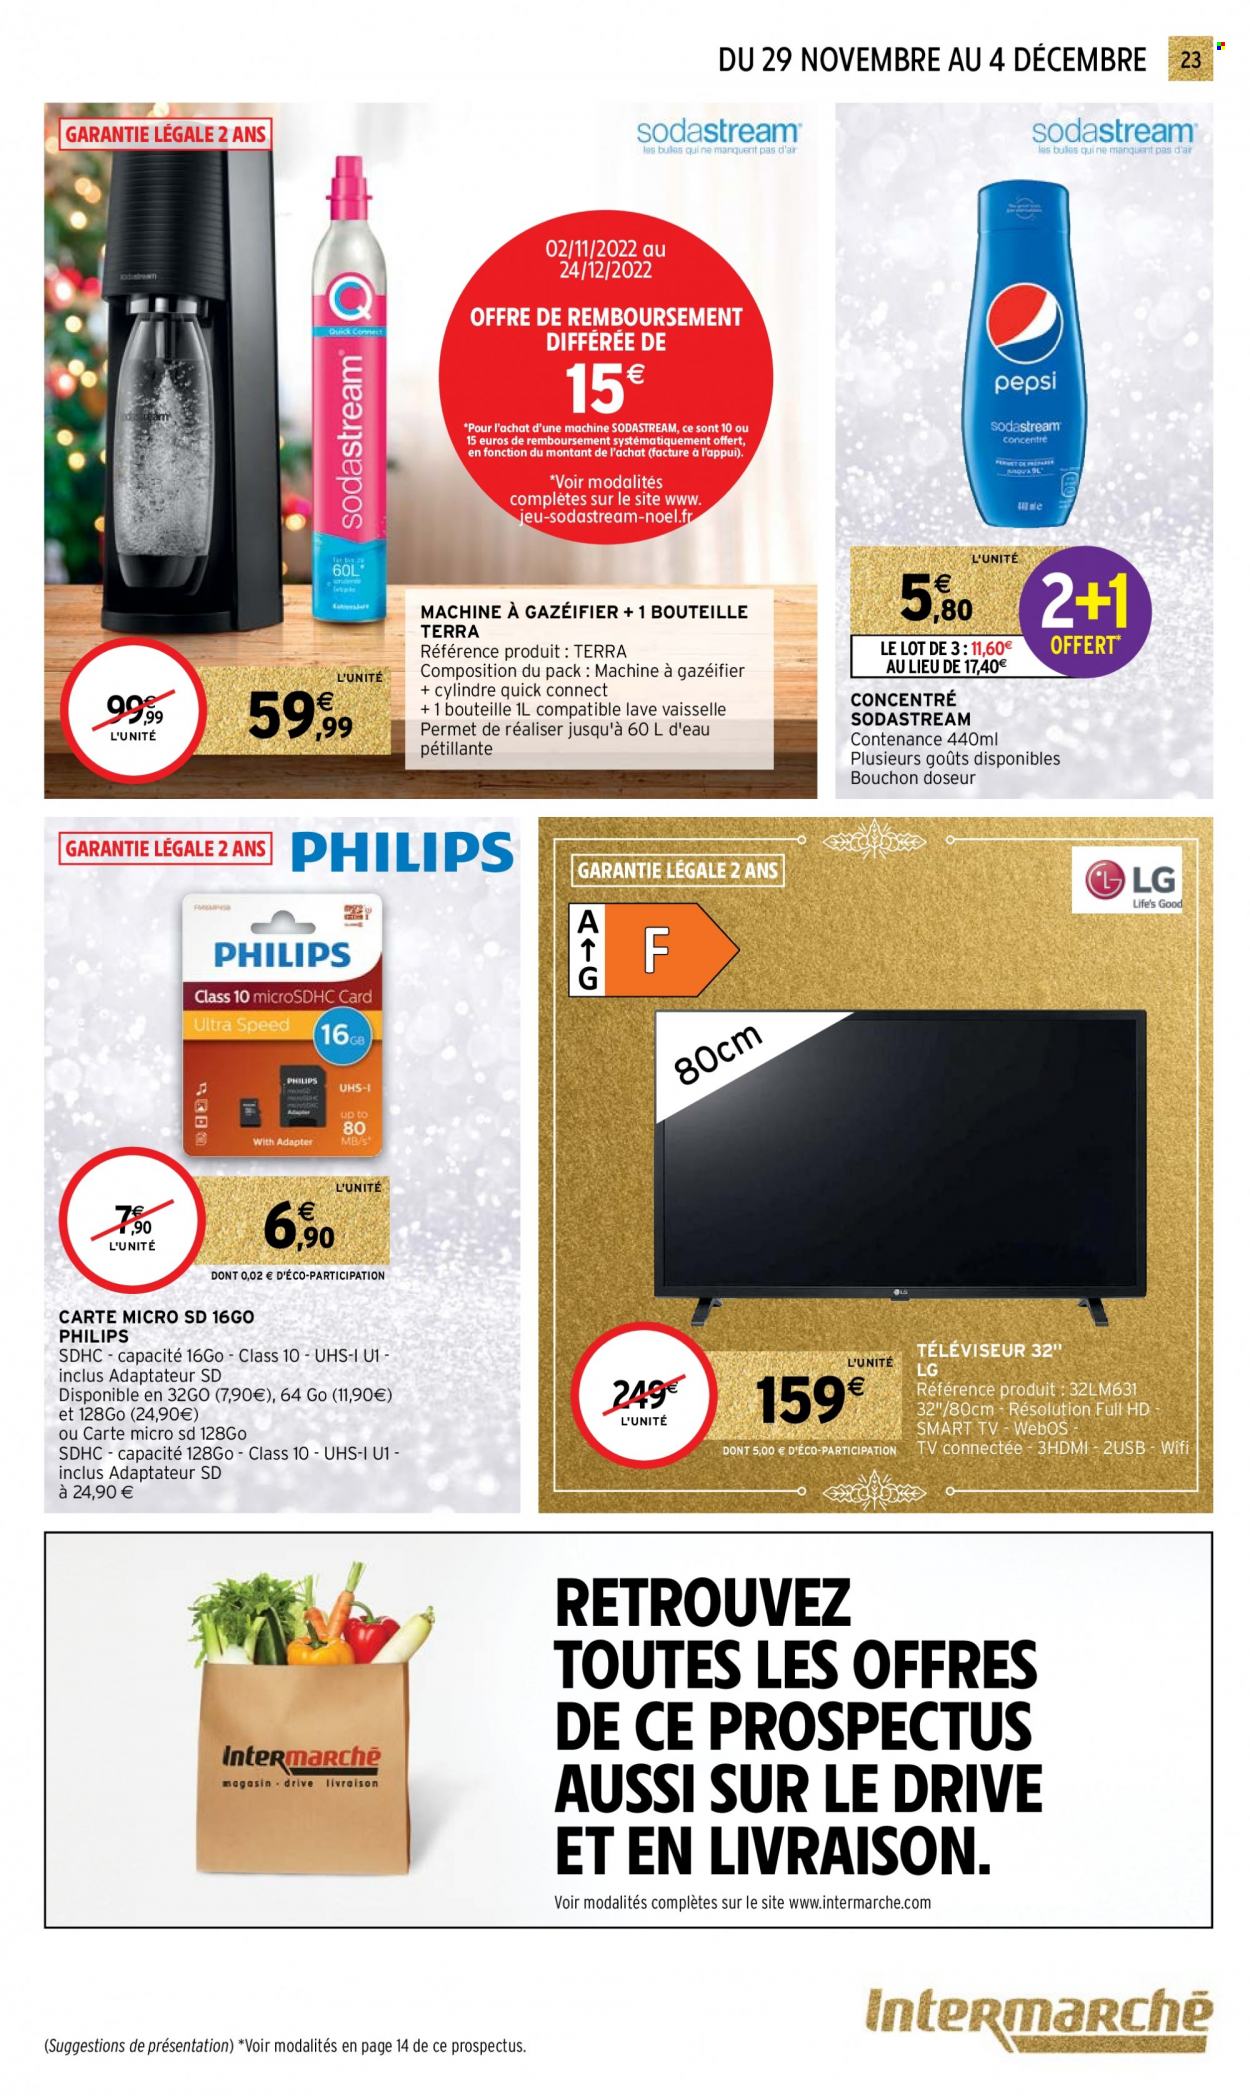 thumbnail - Catalogue Intermarché Super - 29/11/2022 - 04/12/2022 - Produits soldés - Philips, LG, jeu, SodaStream, bouchon doseur, carte micro sd, téléviseur, smart tv, machine à gazéifier. Page 23.